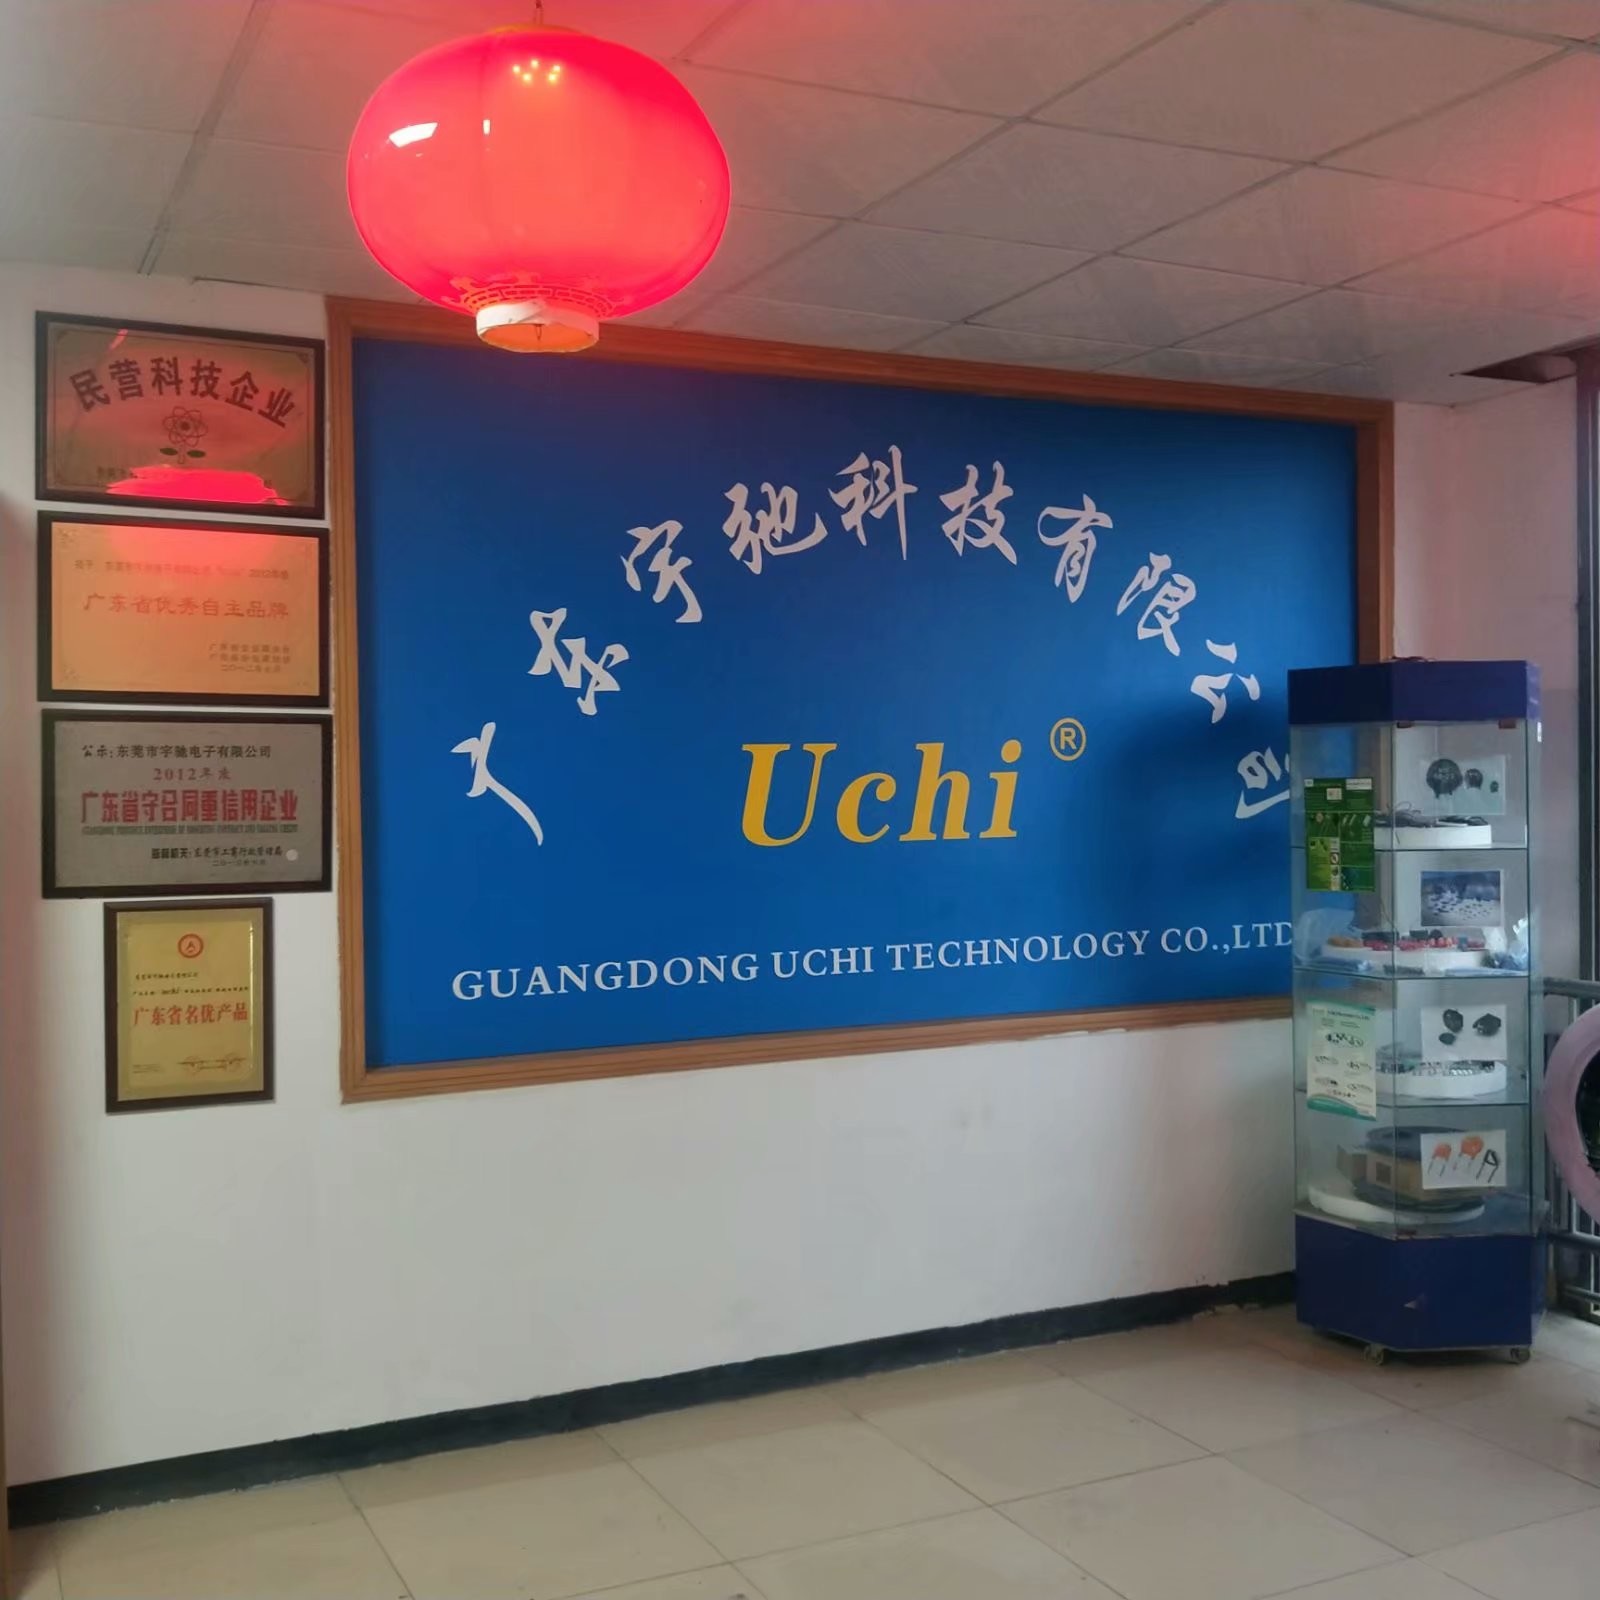 Chine Guangdong Uchi Technology Co.,Ltd